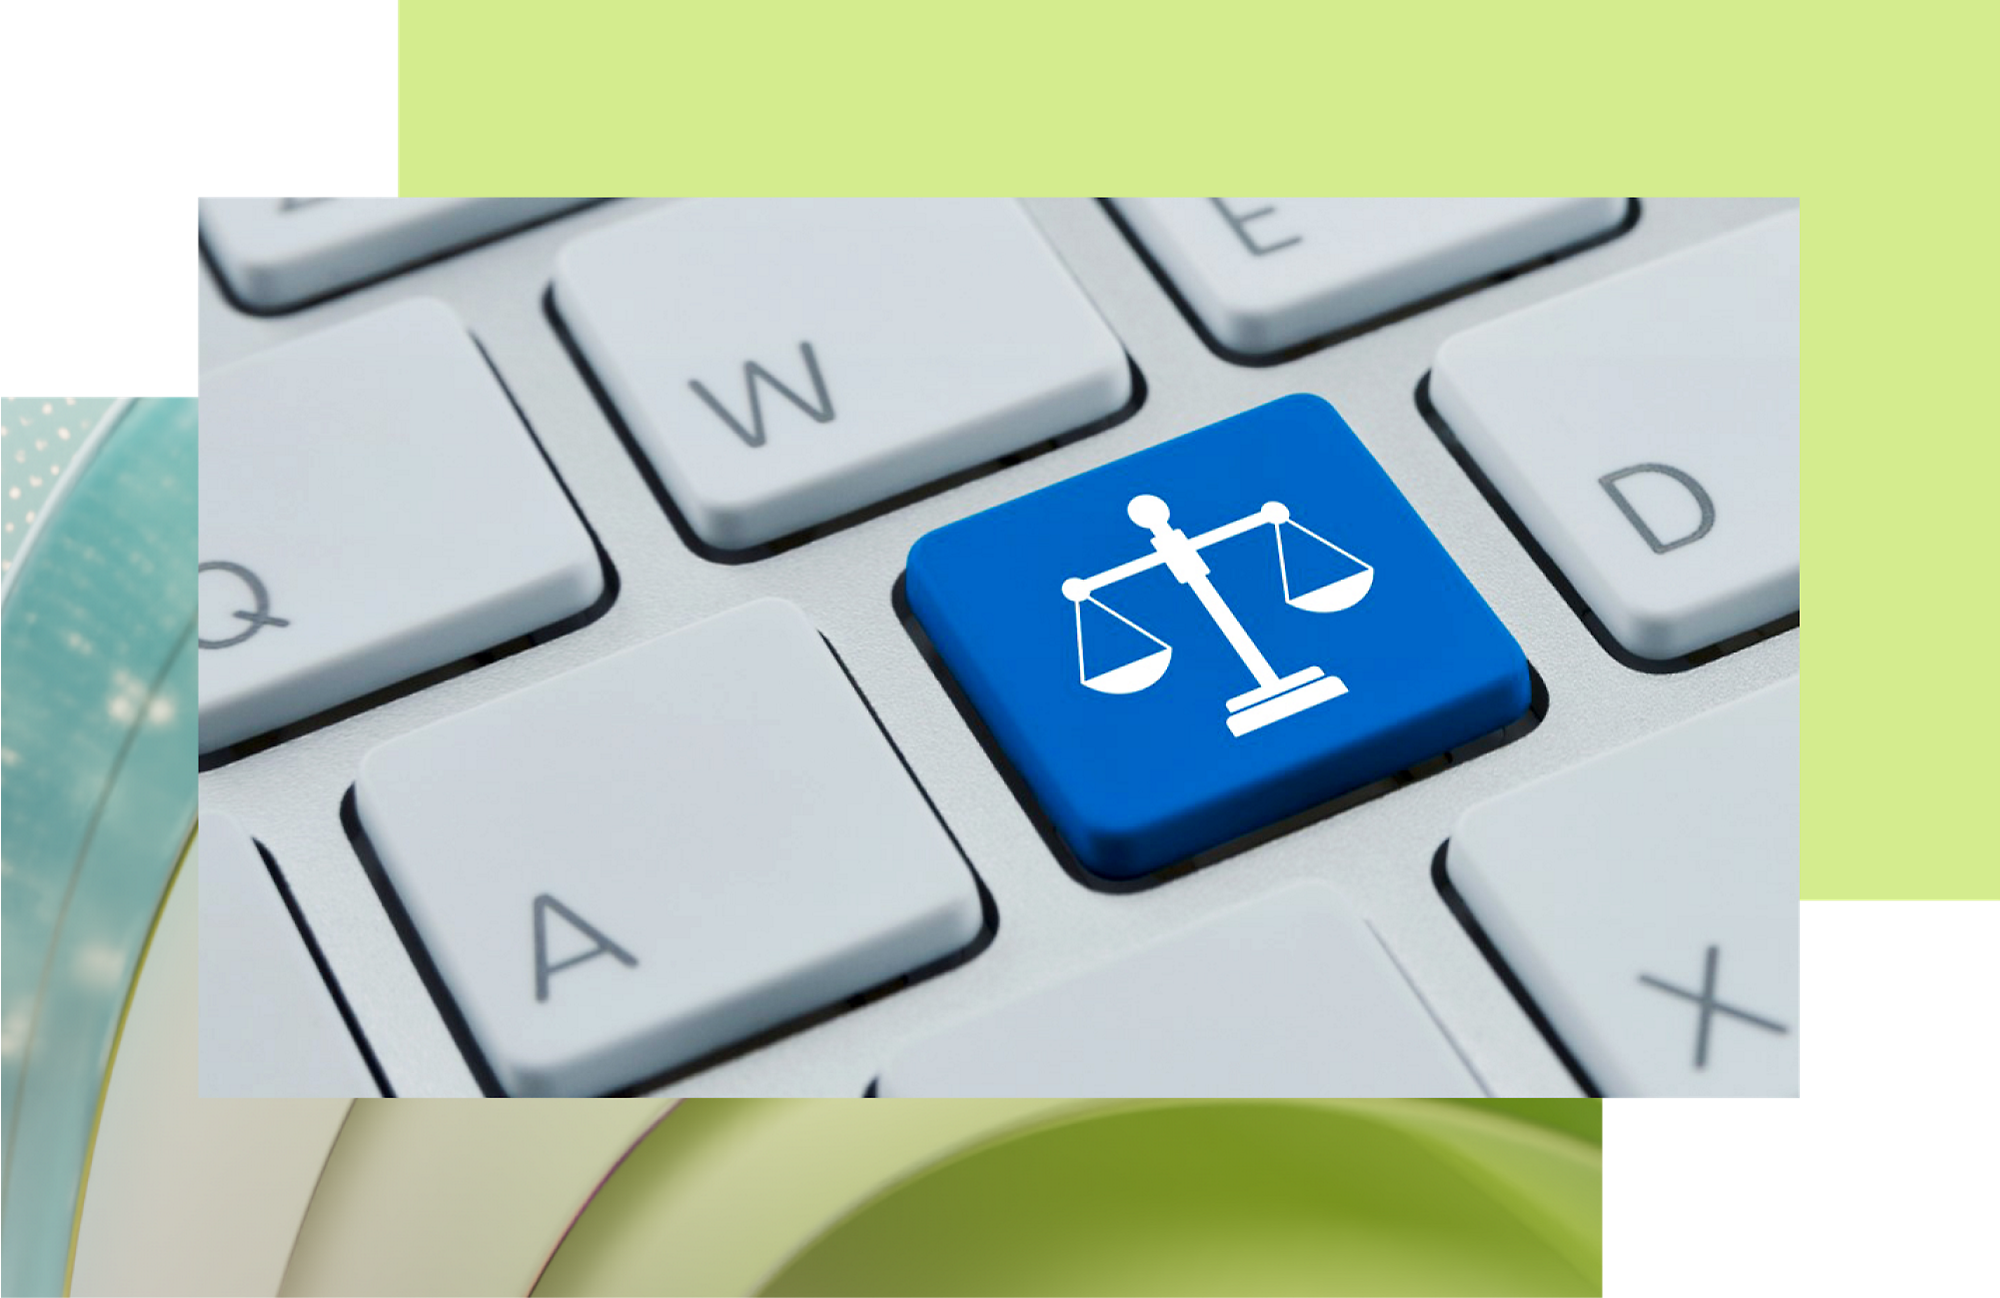 Eine blaue Taste mit einem weißen Waage-Symbol auf einer Tastatur, die Rechtshilfe oder Technologie mit Fokus auf die Justiz symbolisiert.